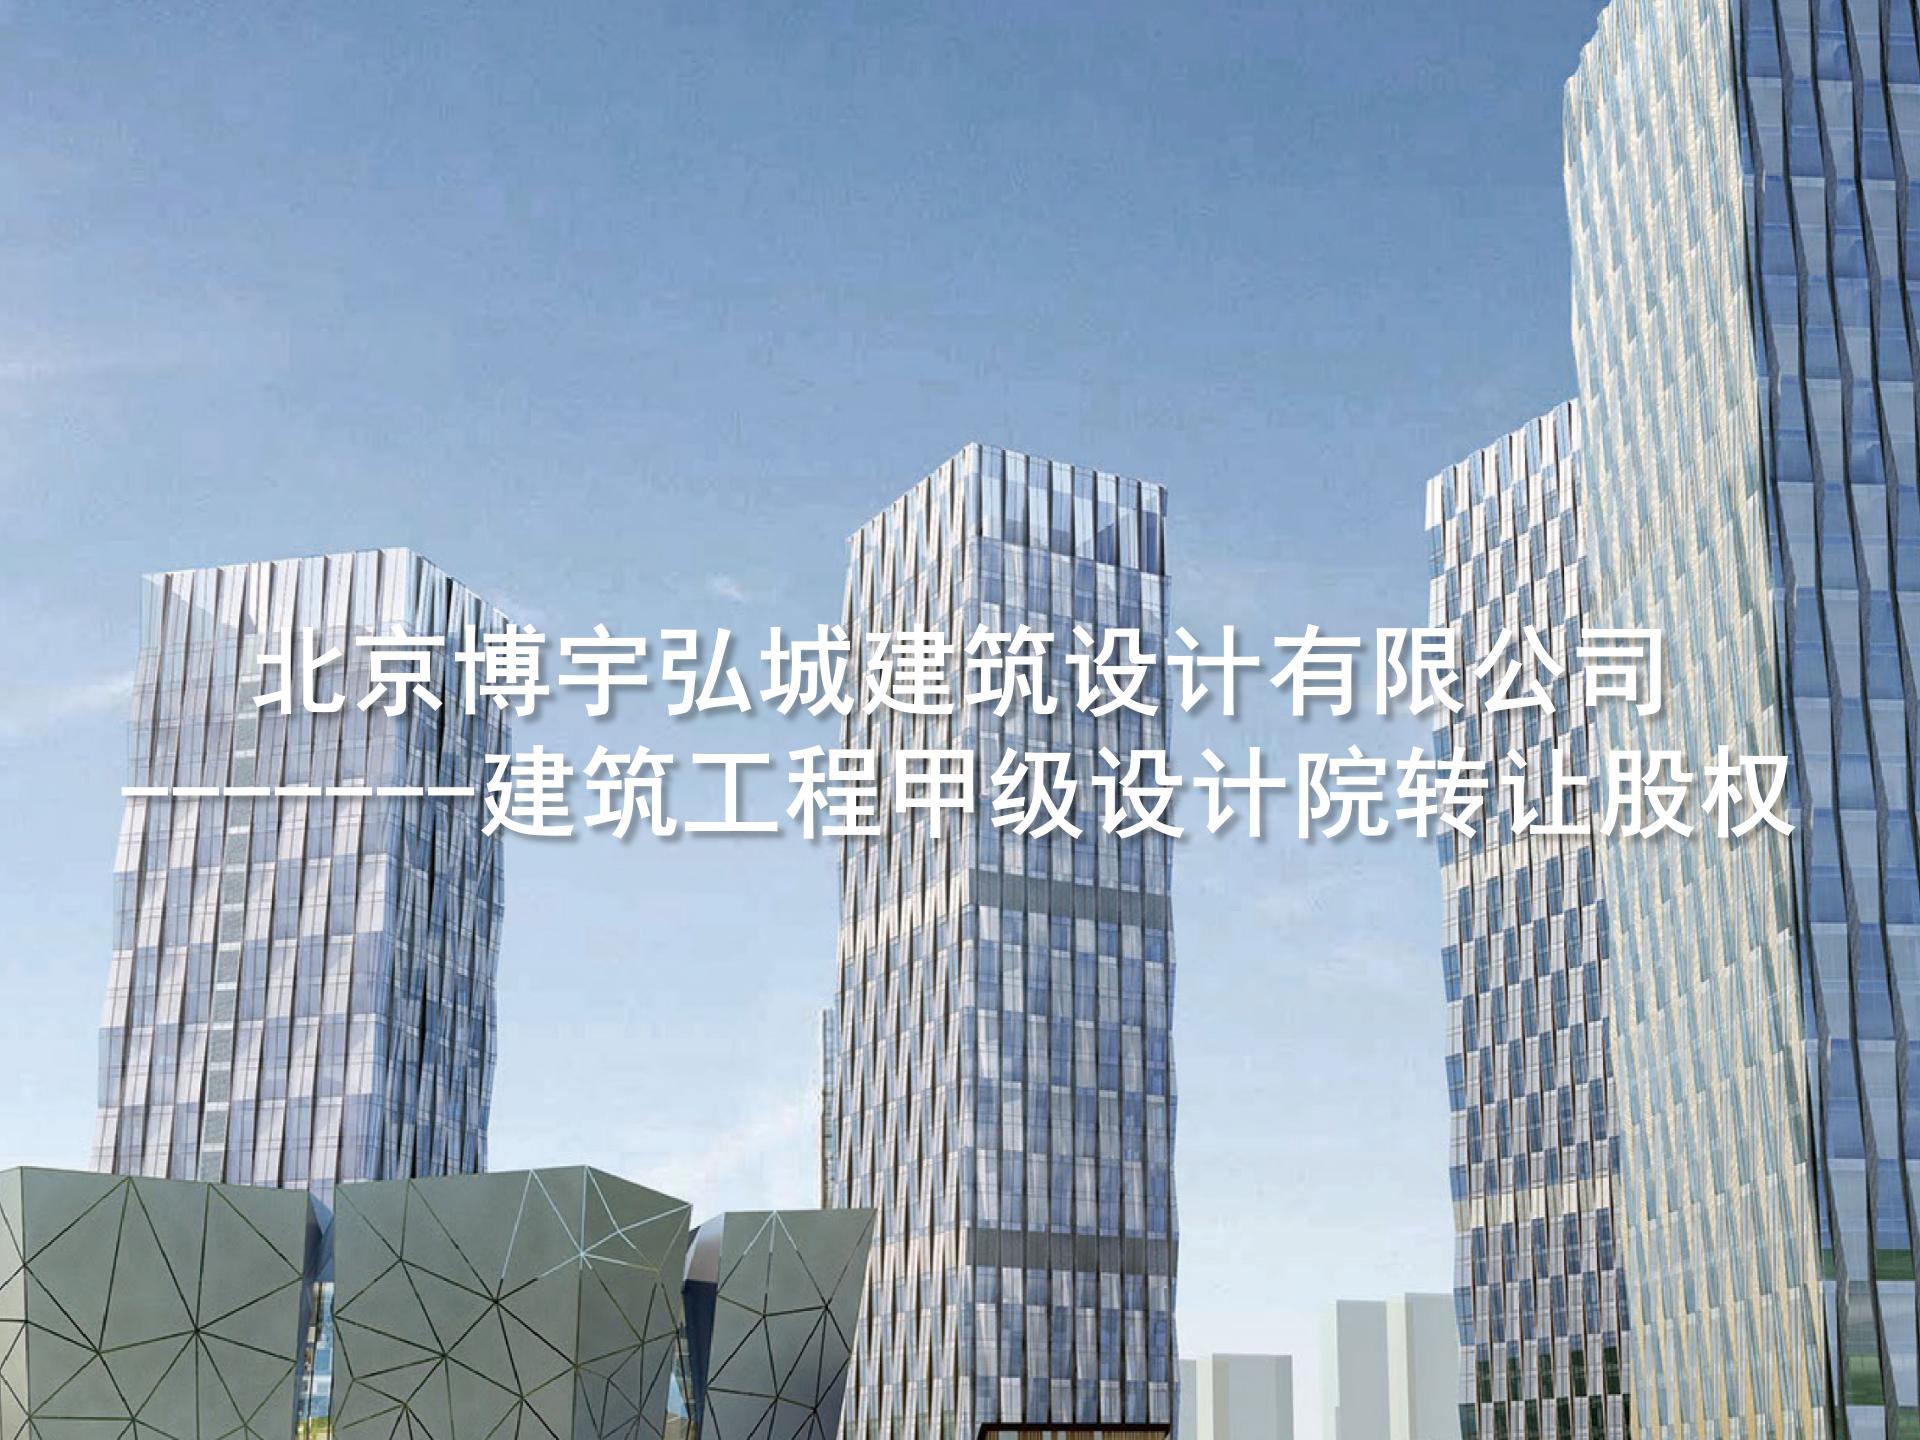 北京博宇弘城建筑设计有限公司 ——建筑工程甲级设计院转让股权-1.jpg